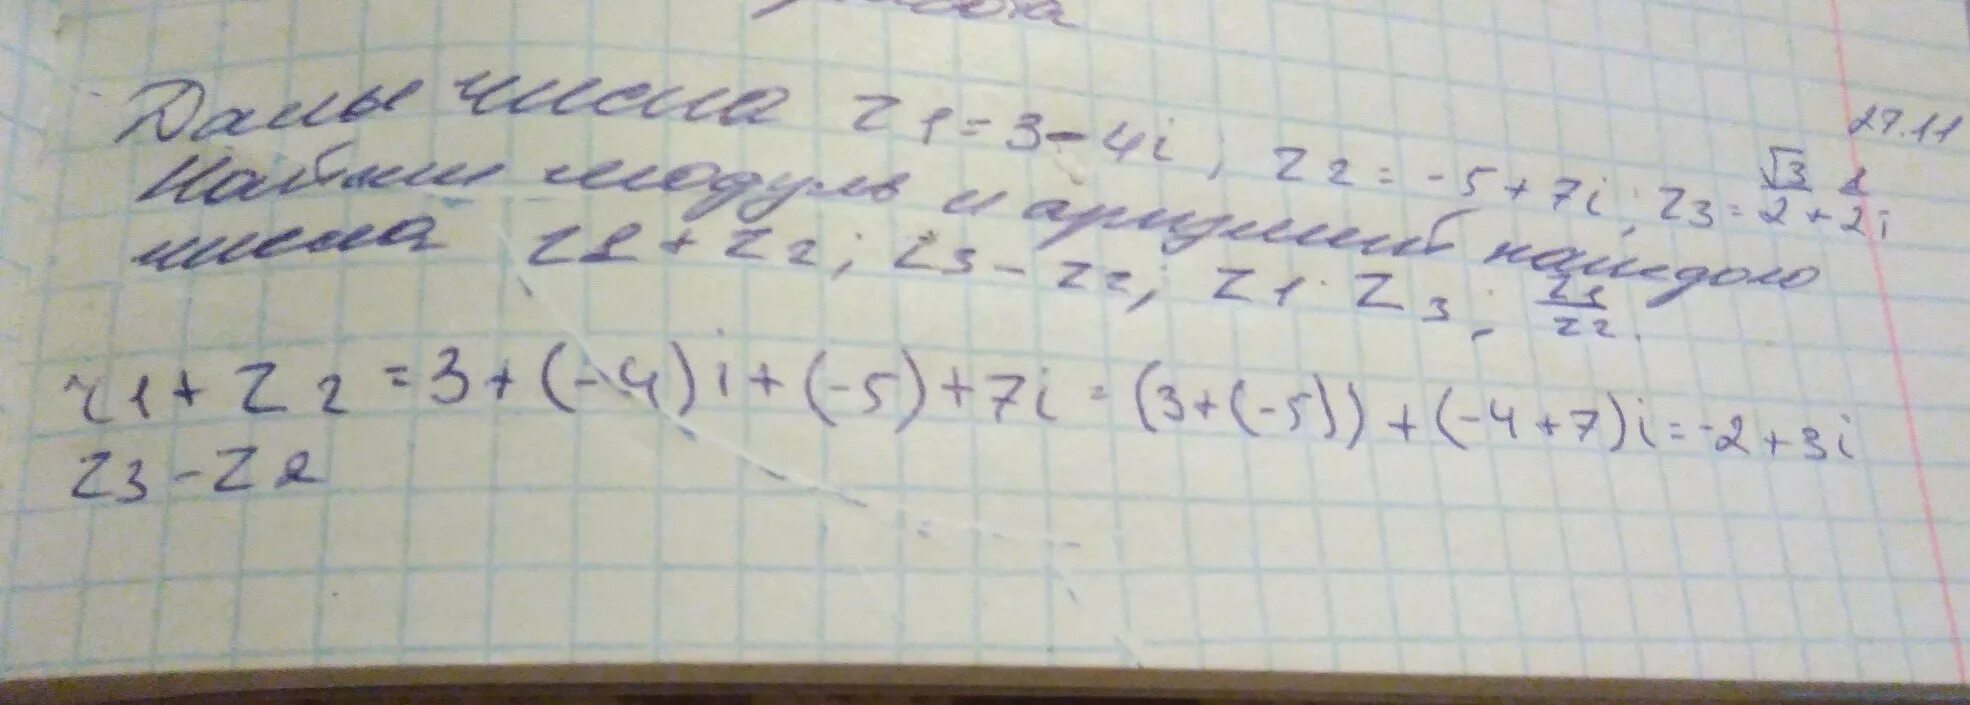 3z 3 2 z 1. Модуль z1 z2 модуль z1 модуль z2. Модуль комплексного числа z= 4 + 3i. Z1=4i,z2=2+2.корень 3. Z1 = 5 + 5 i z2 = 1 + корень 3 i.